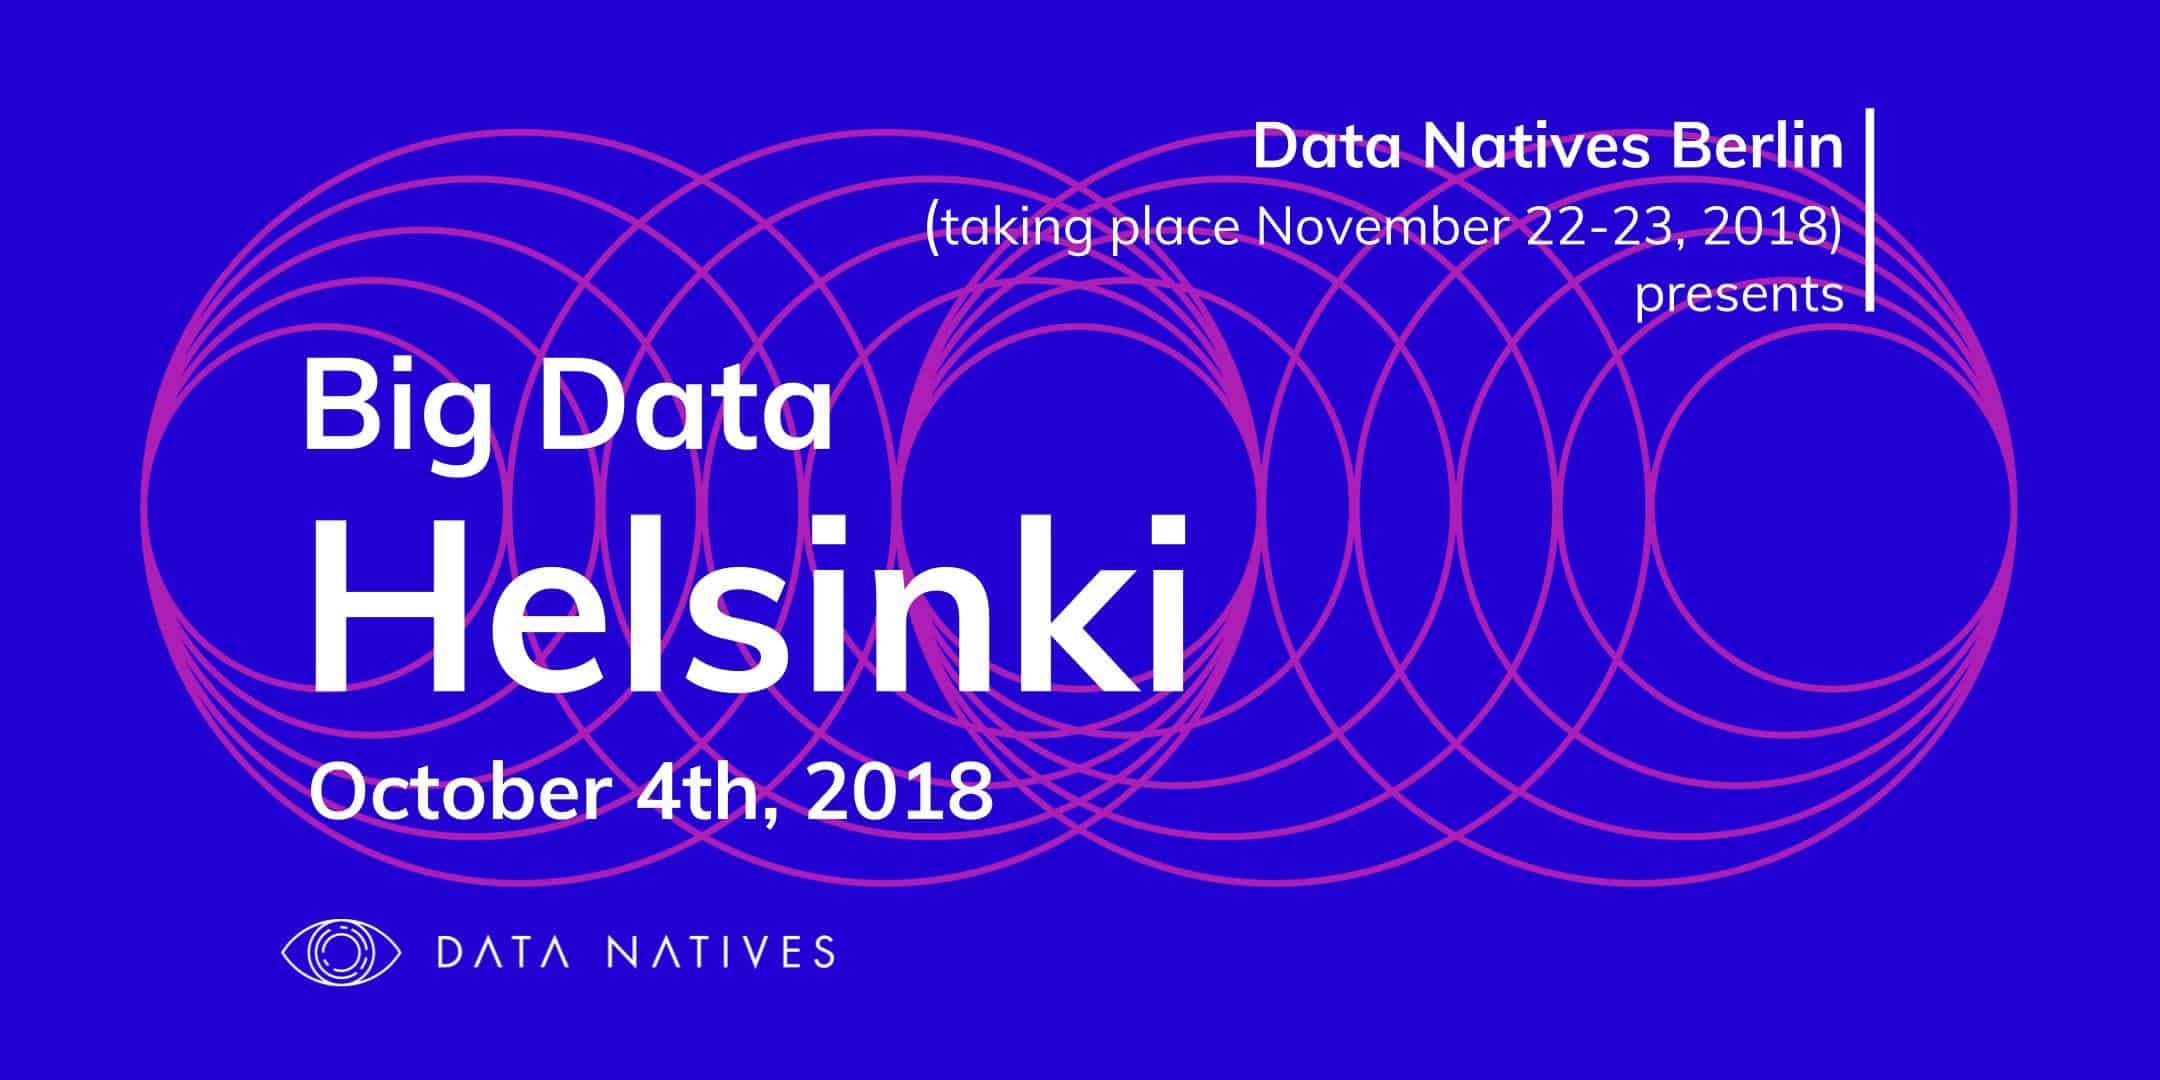 Big Data, Helsinki V 2.0